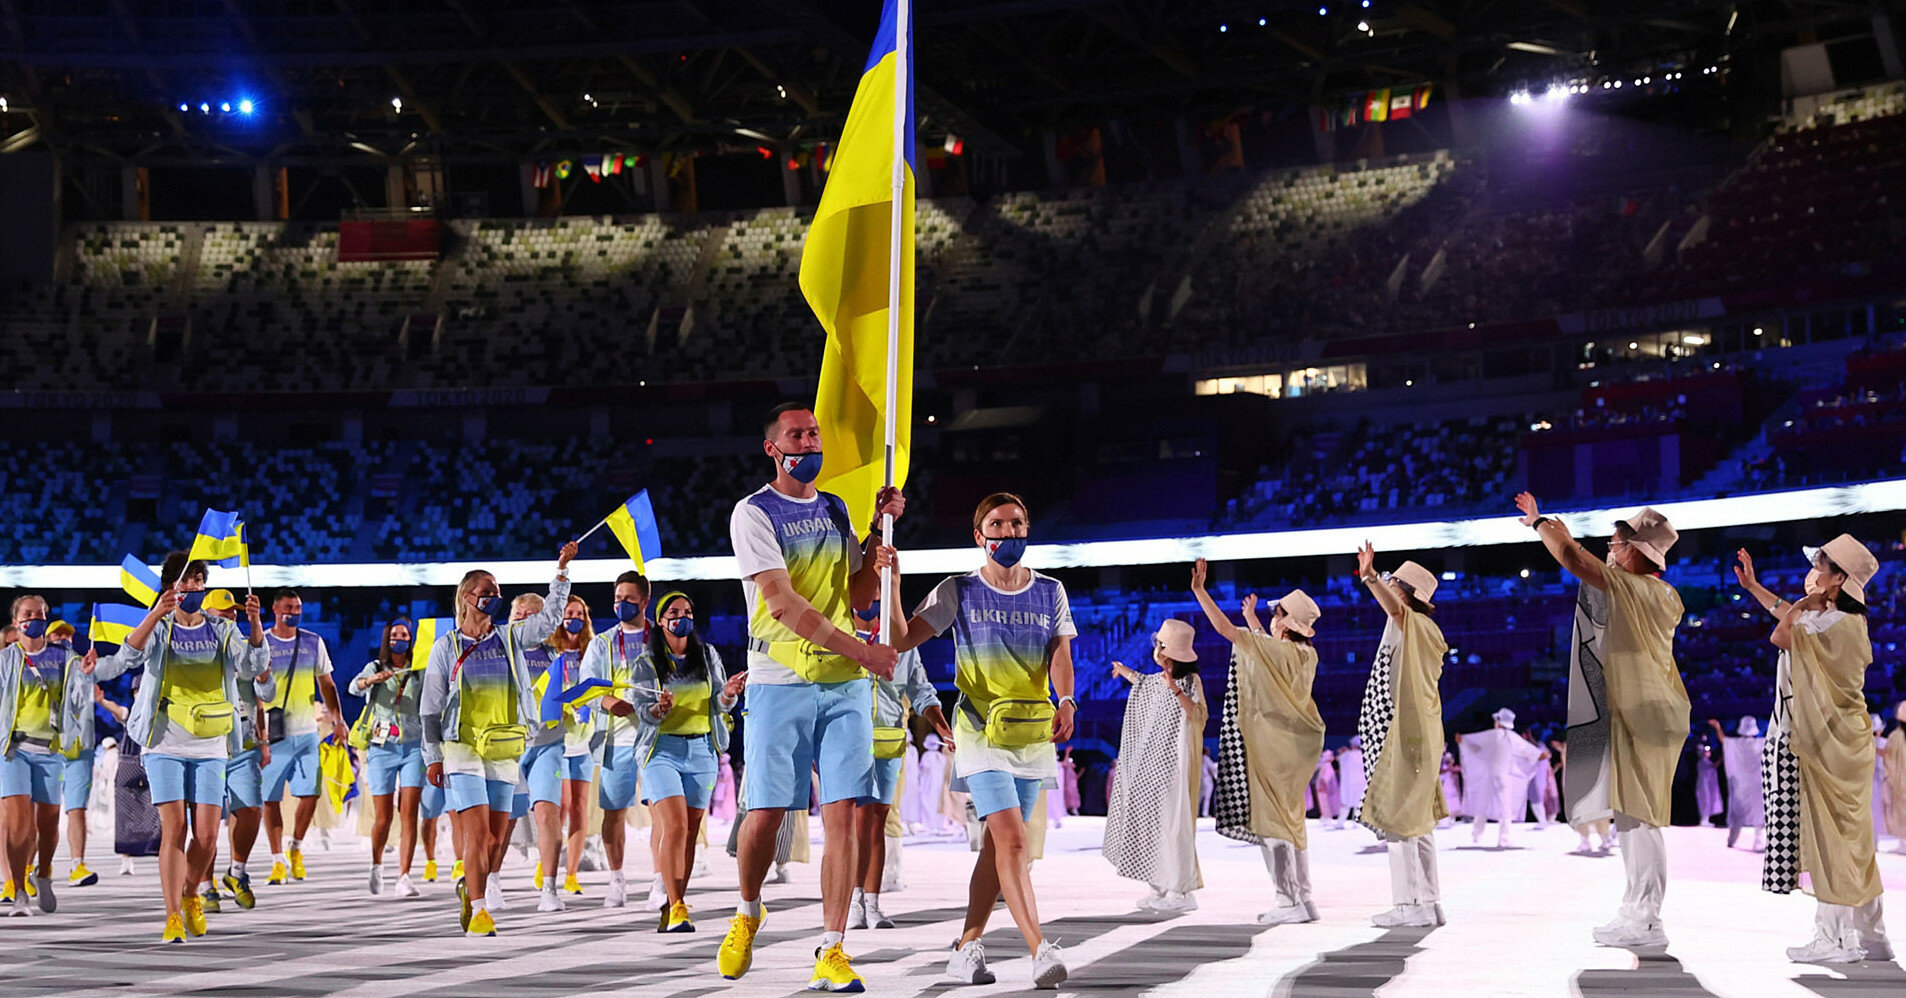 Українцям наказано не стояти поряд із символікою РФ на Олімпіаді